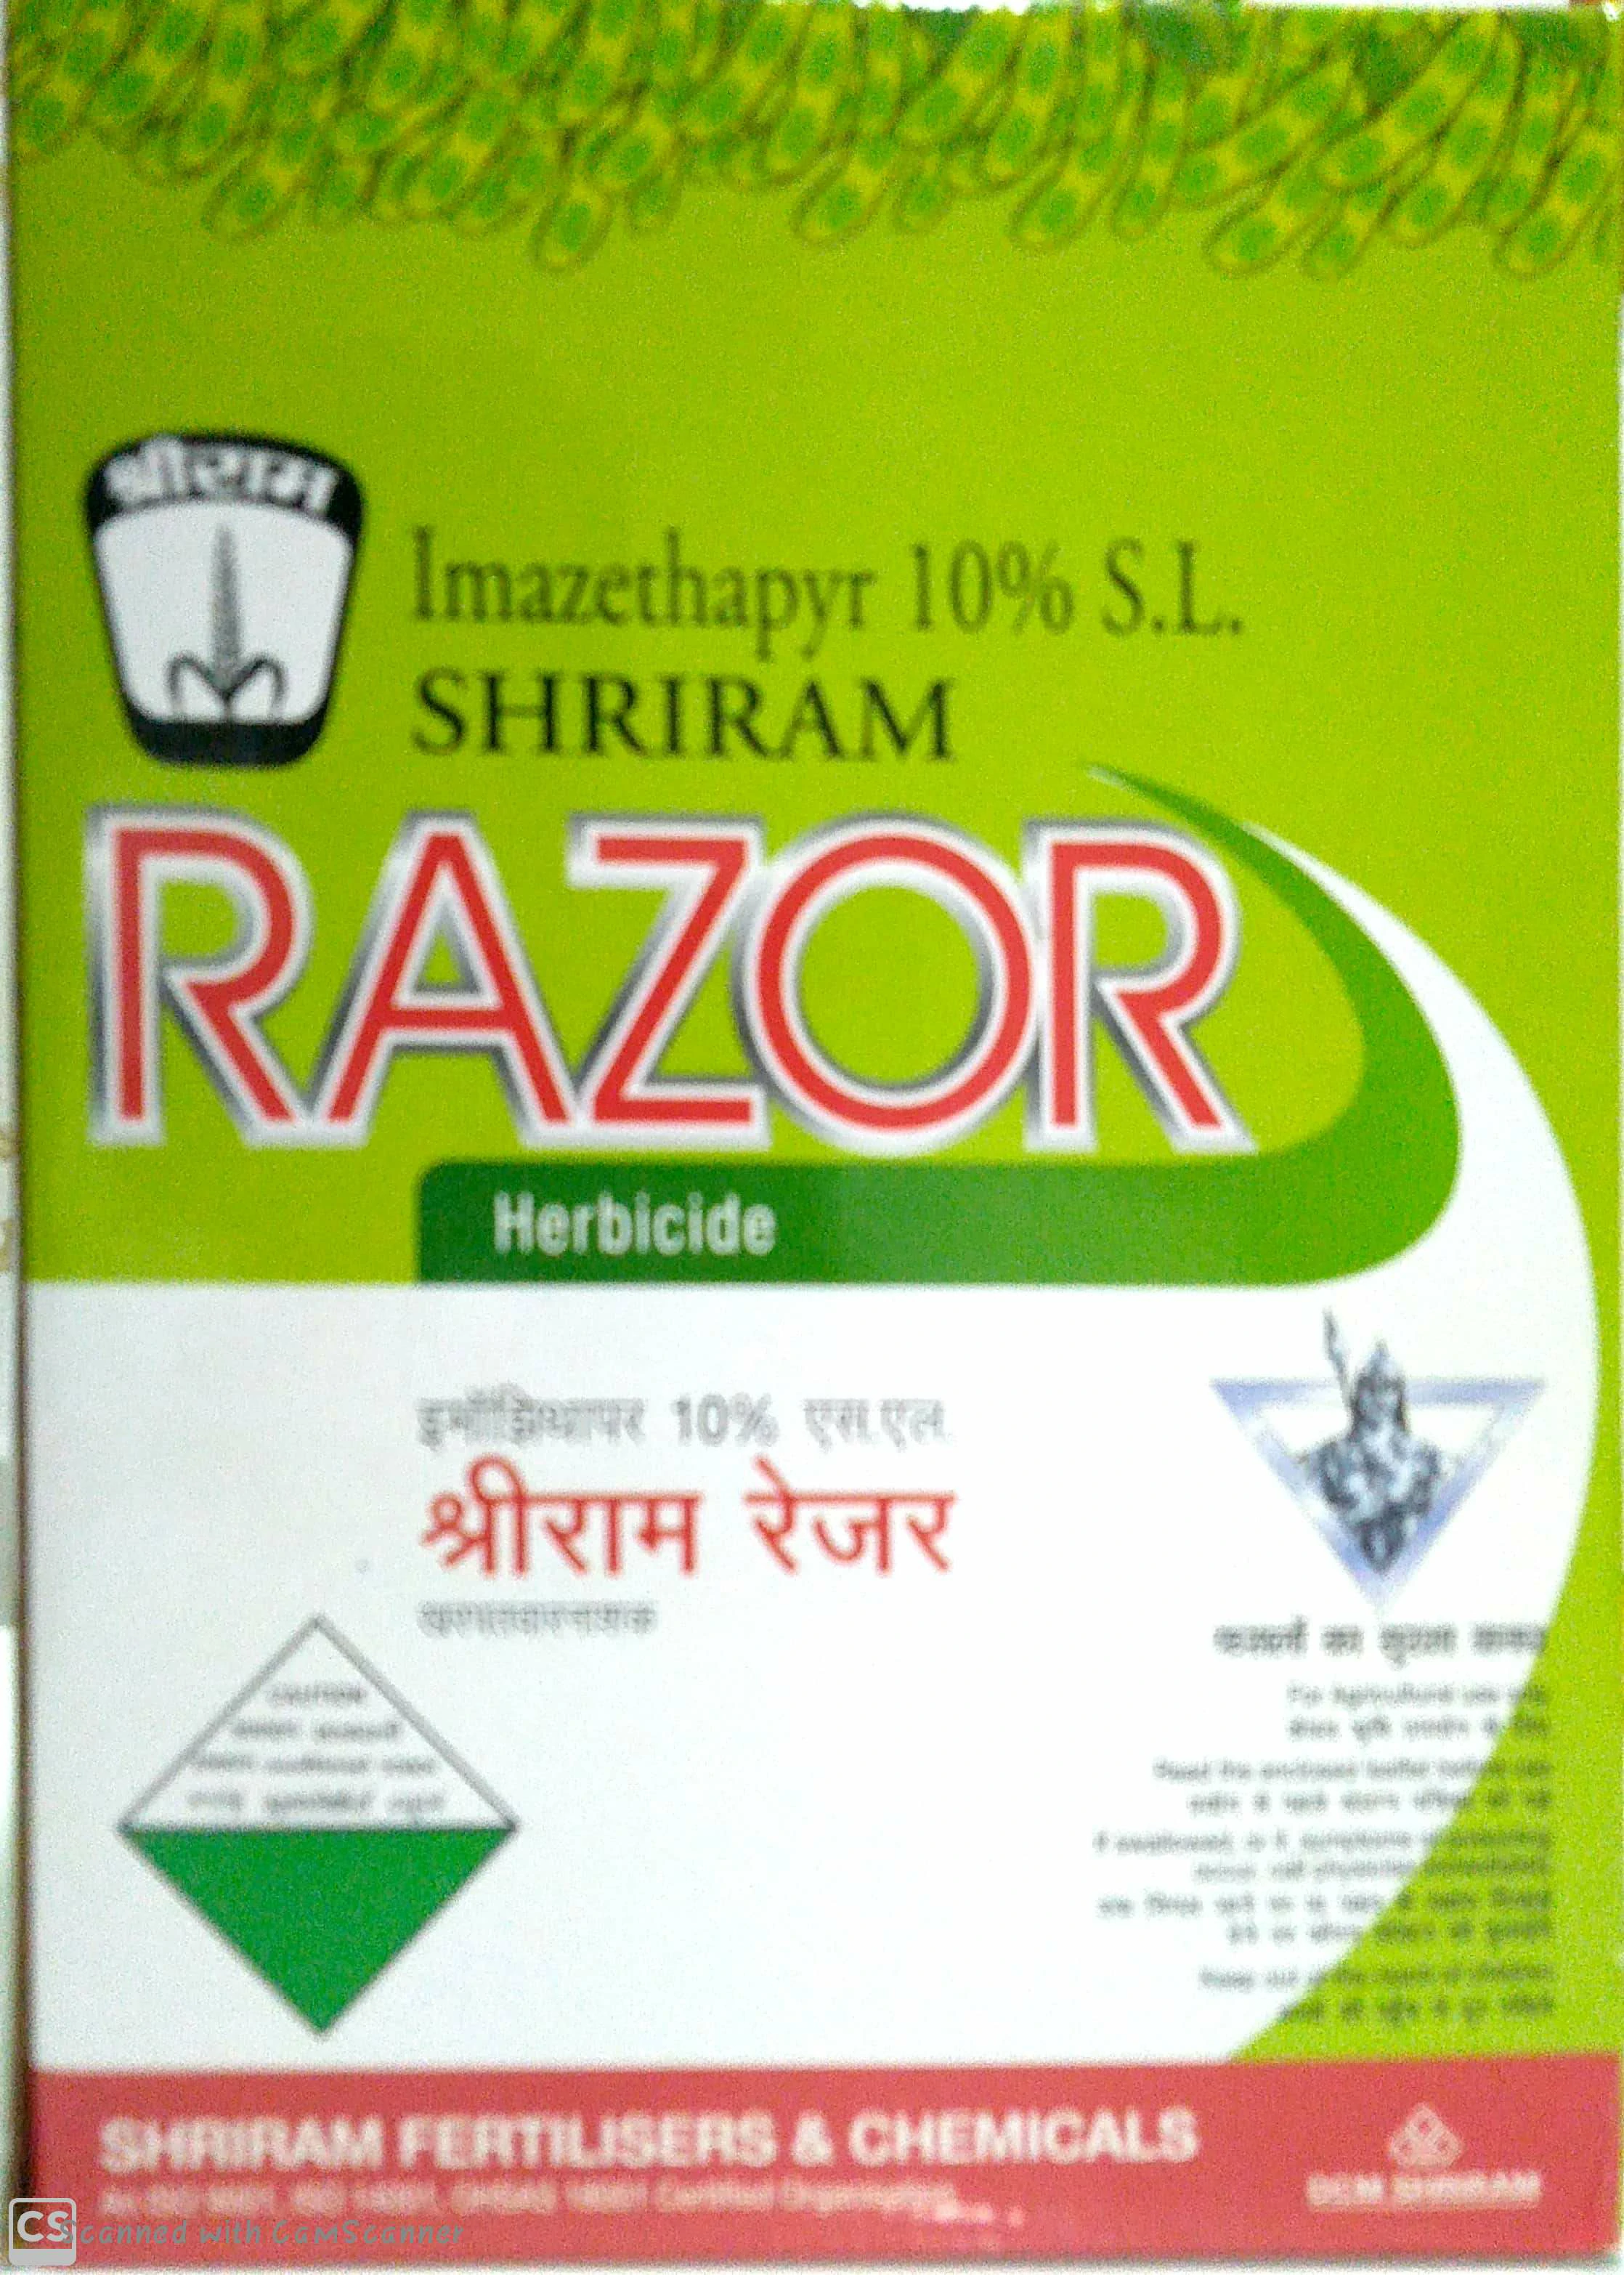 Razor Shriram